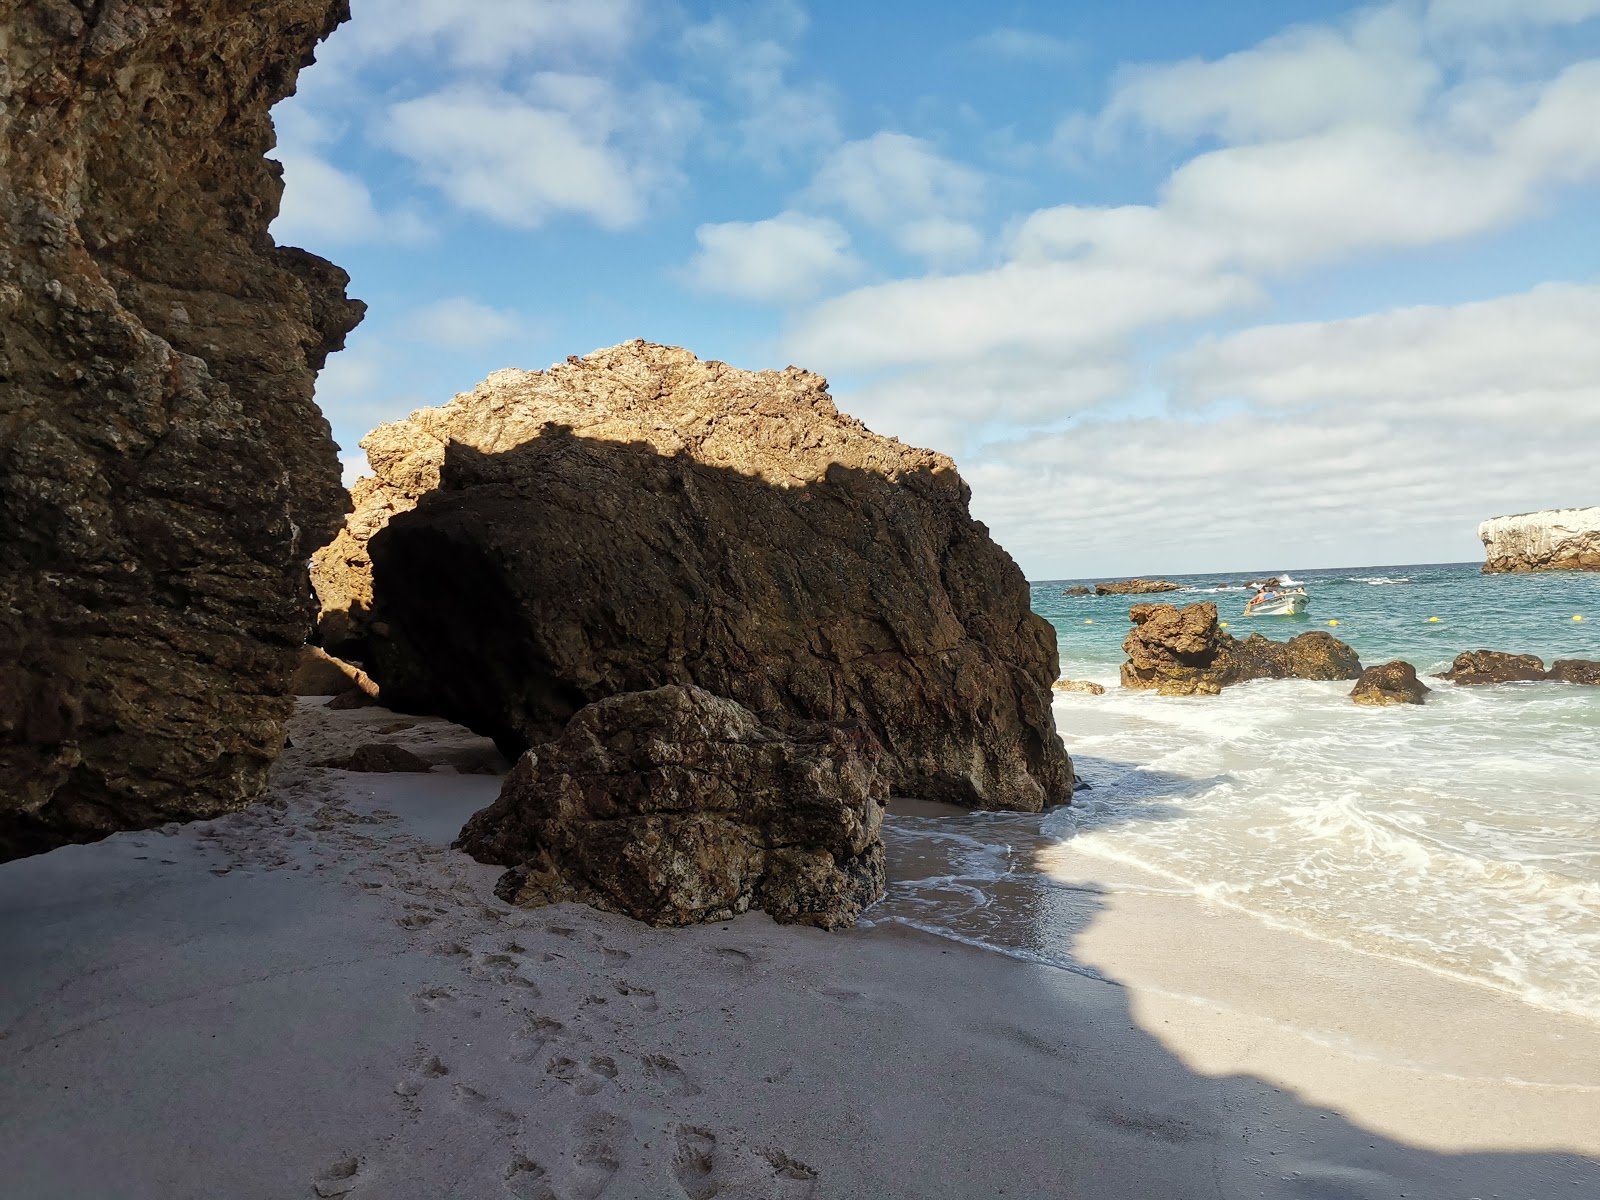 Zdjęcie Playa la nopalera beach położony w naturalnym obszarze